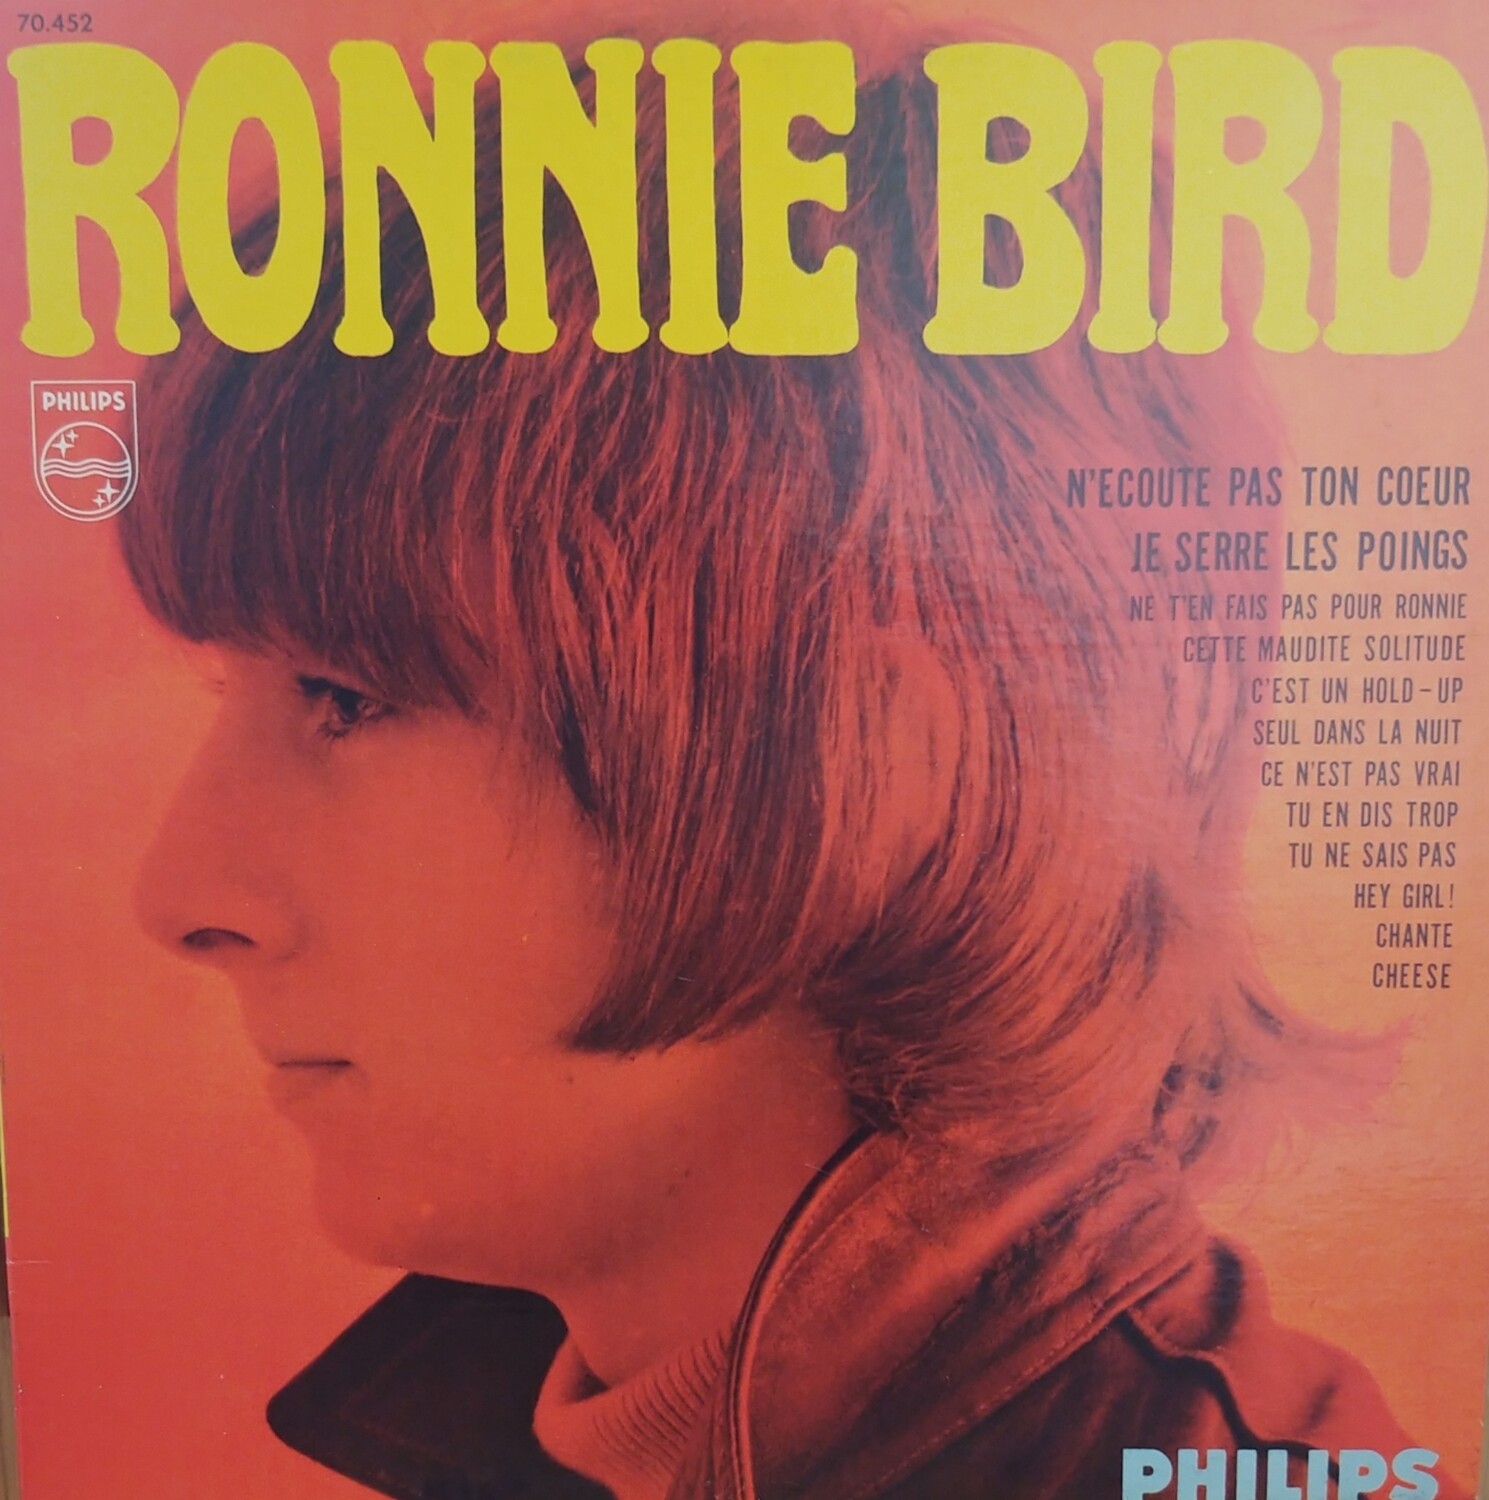 Ronnie Bird - Ronnie Bird